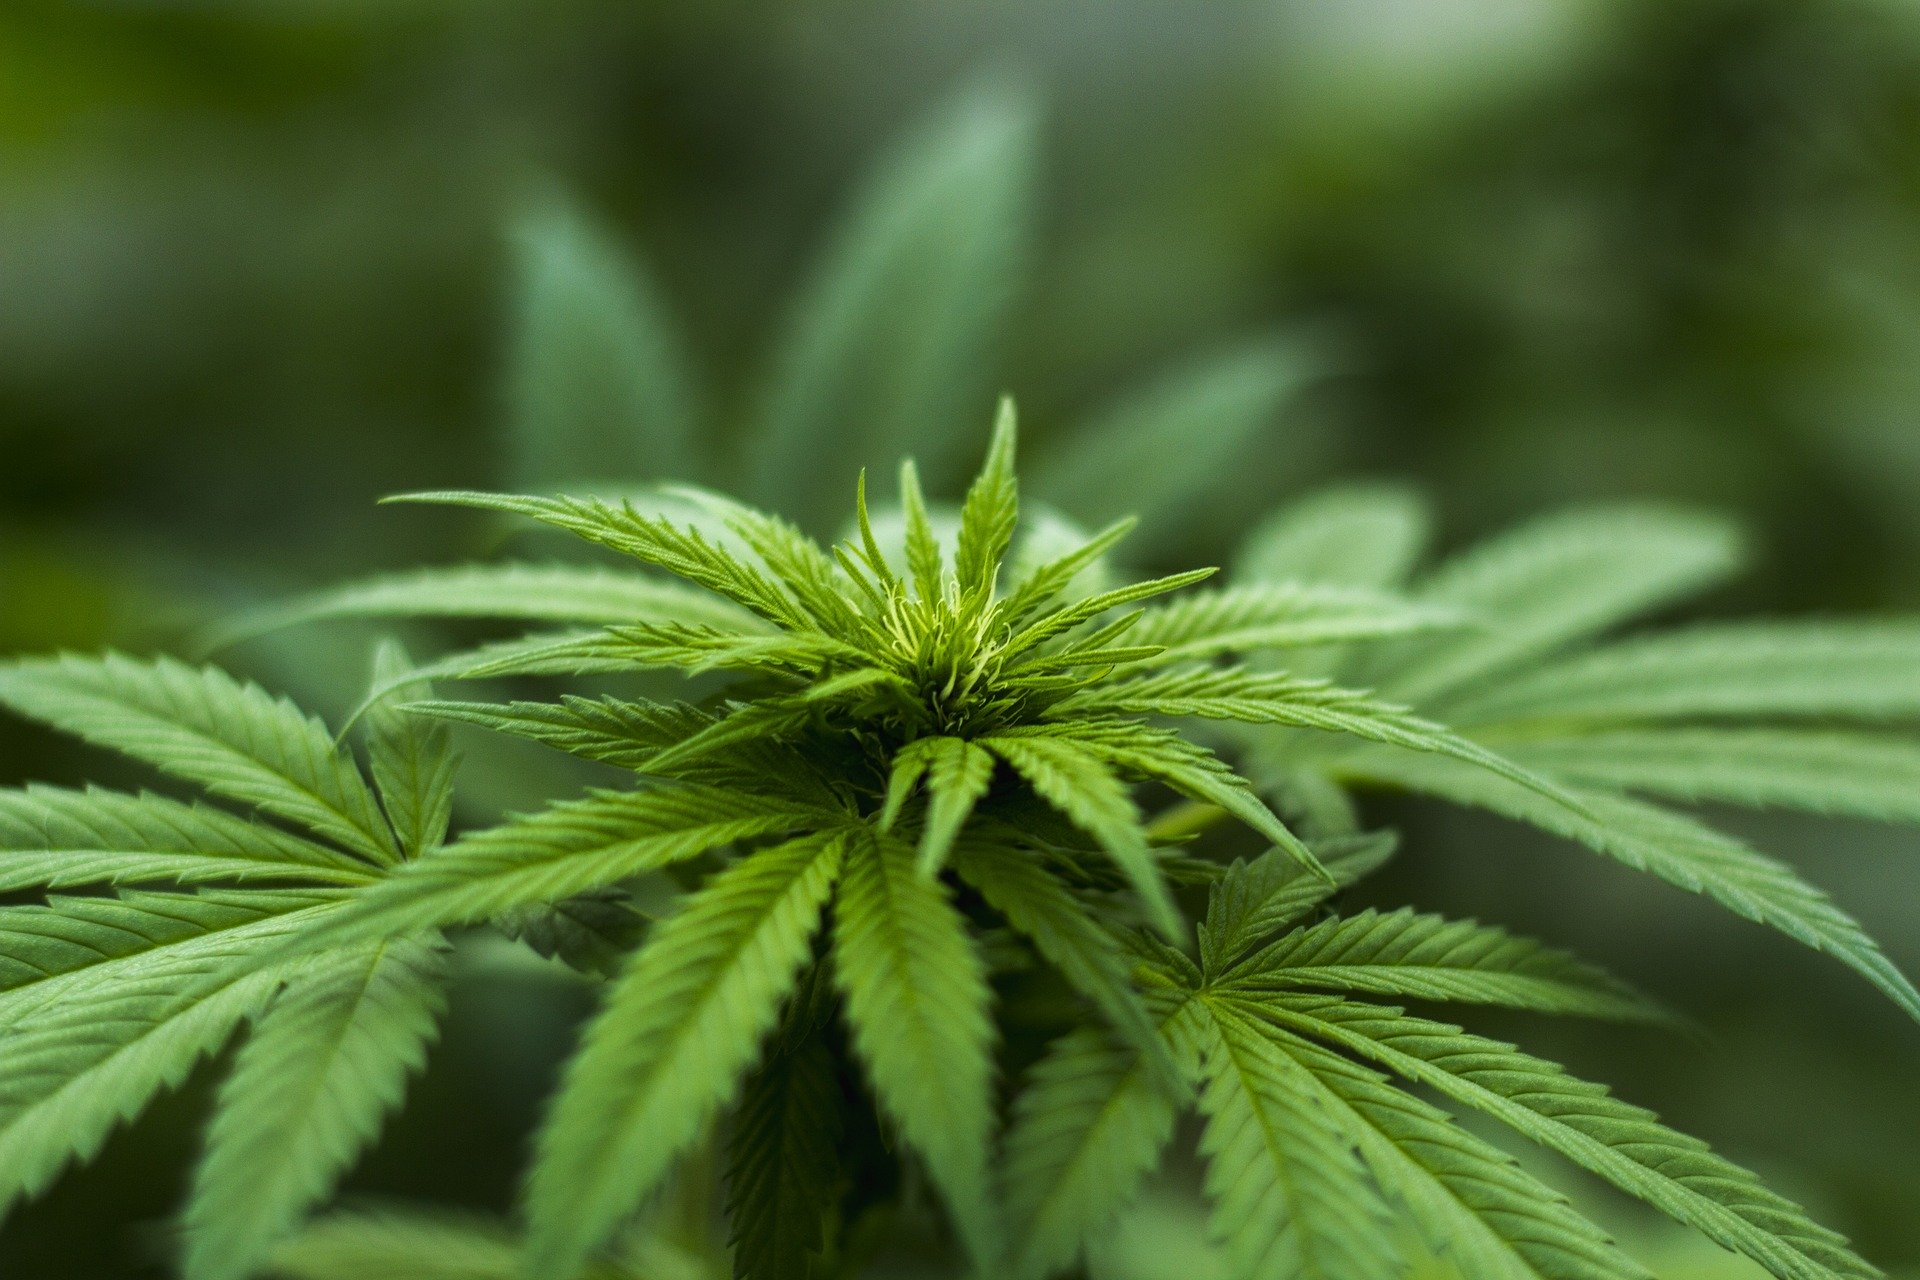 Per la Cassazione si possono tenere a casa due piante di marijuana.